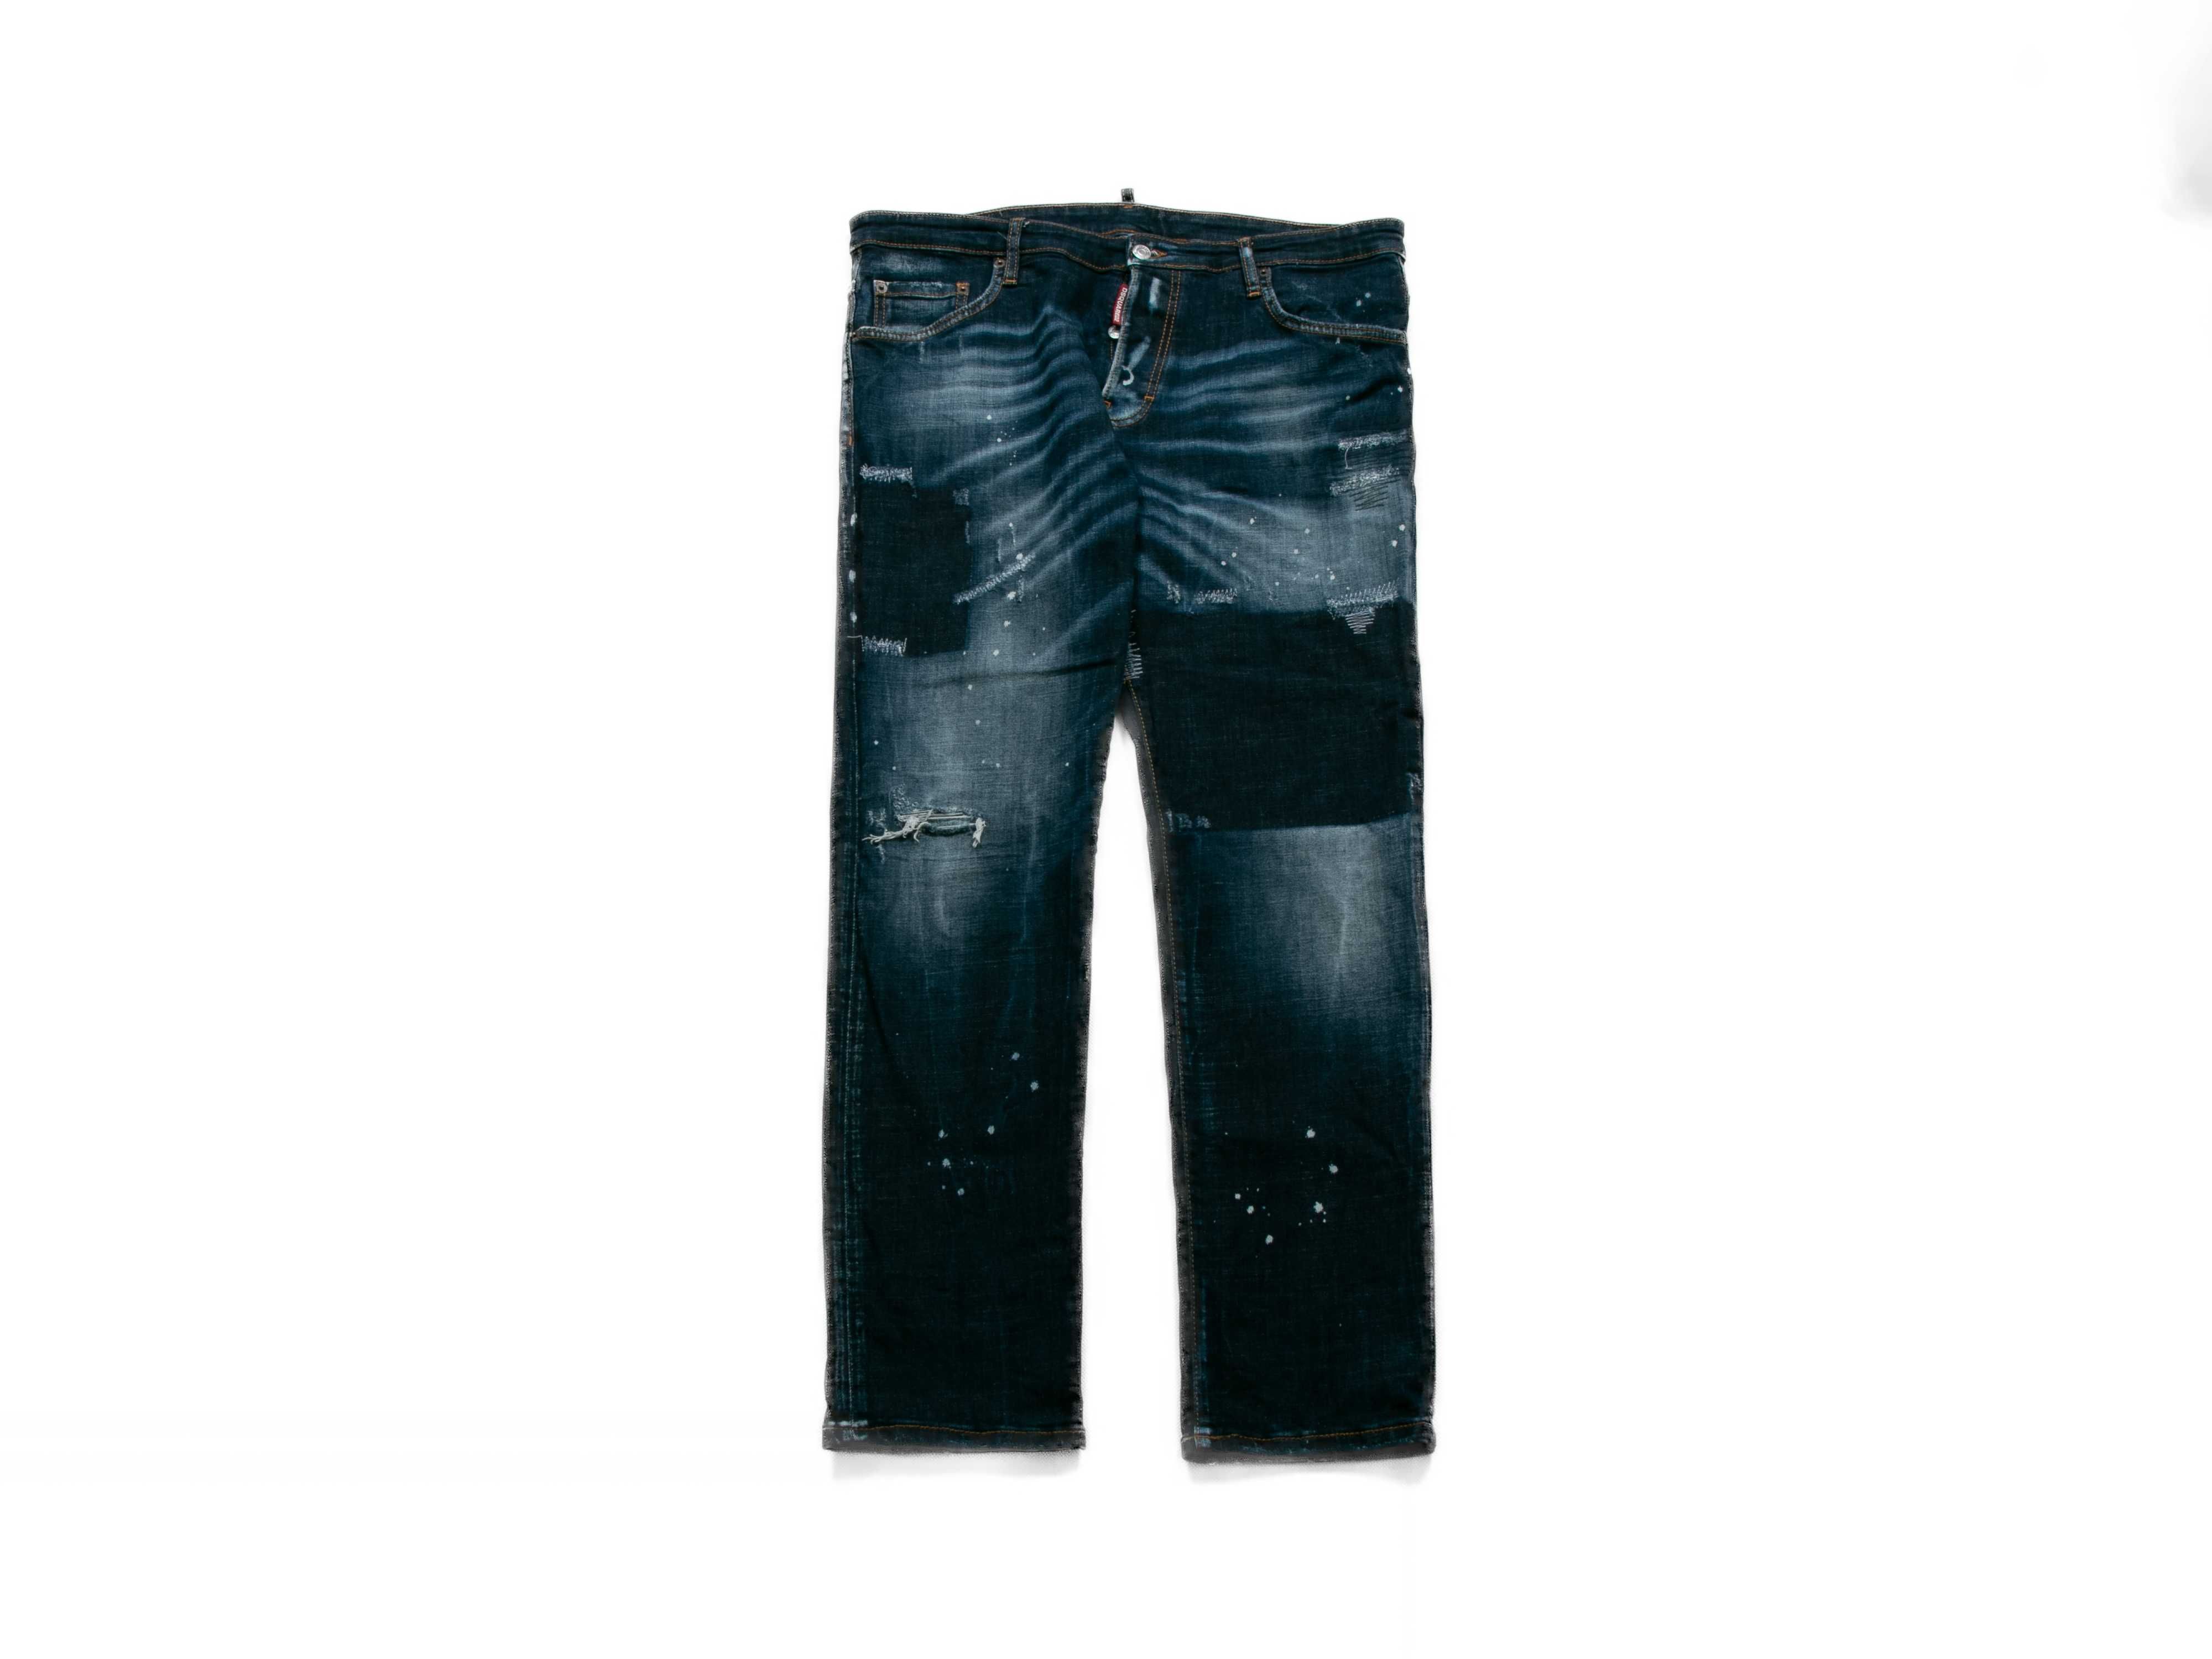 Spodnie jeansowe Dsquared2 52eu/36us straight